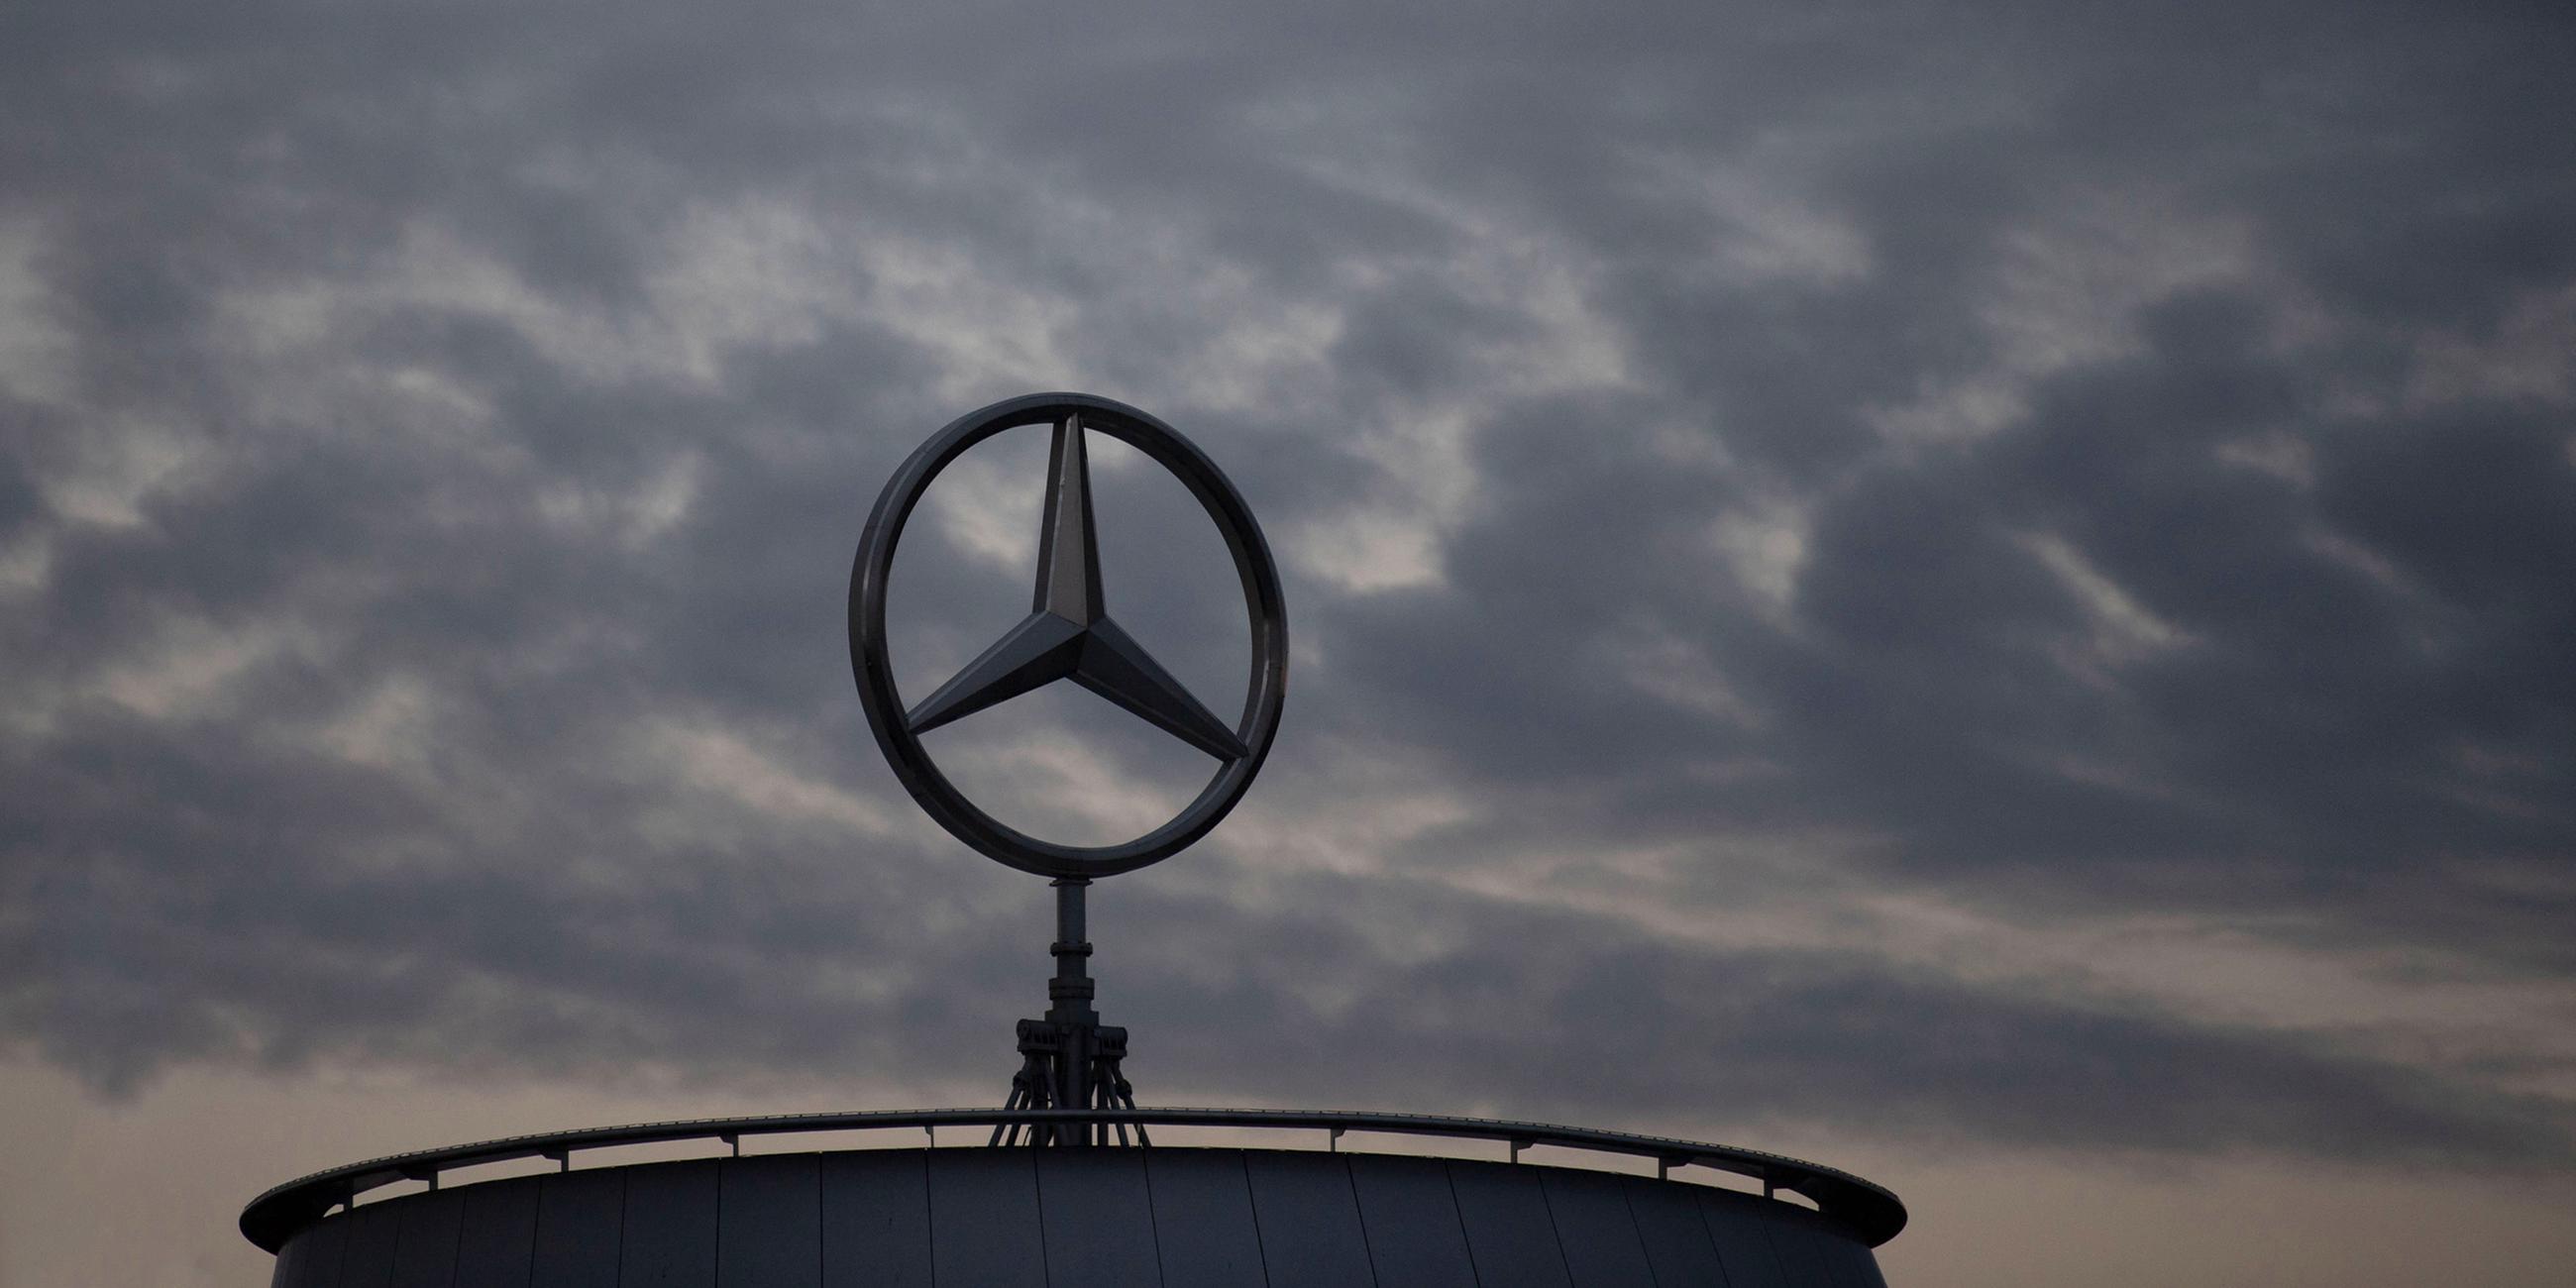 Der Mercedes-Stern ist an der Mercedes Benz-Hauptniederlassung in Untertürkheim am 08.07.2020